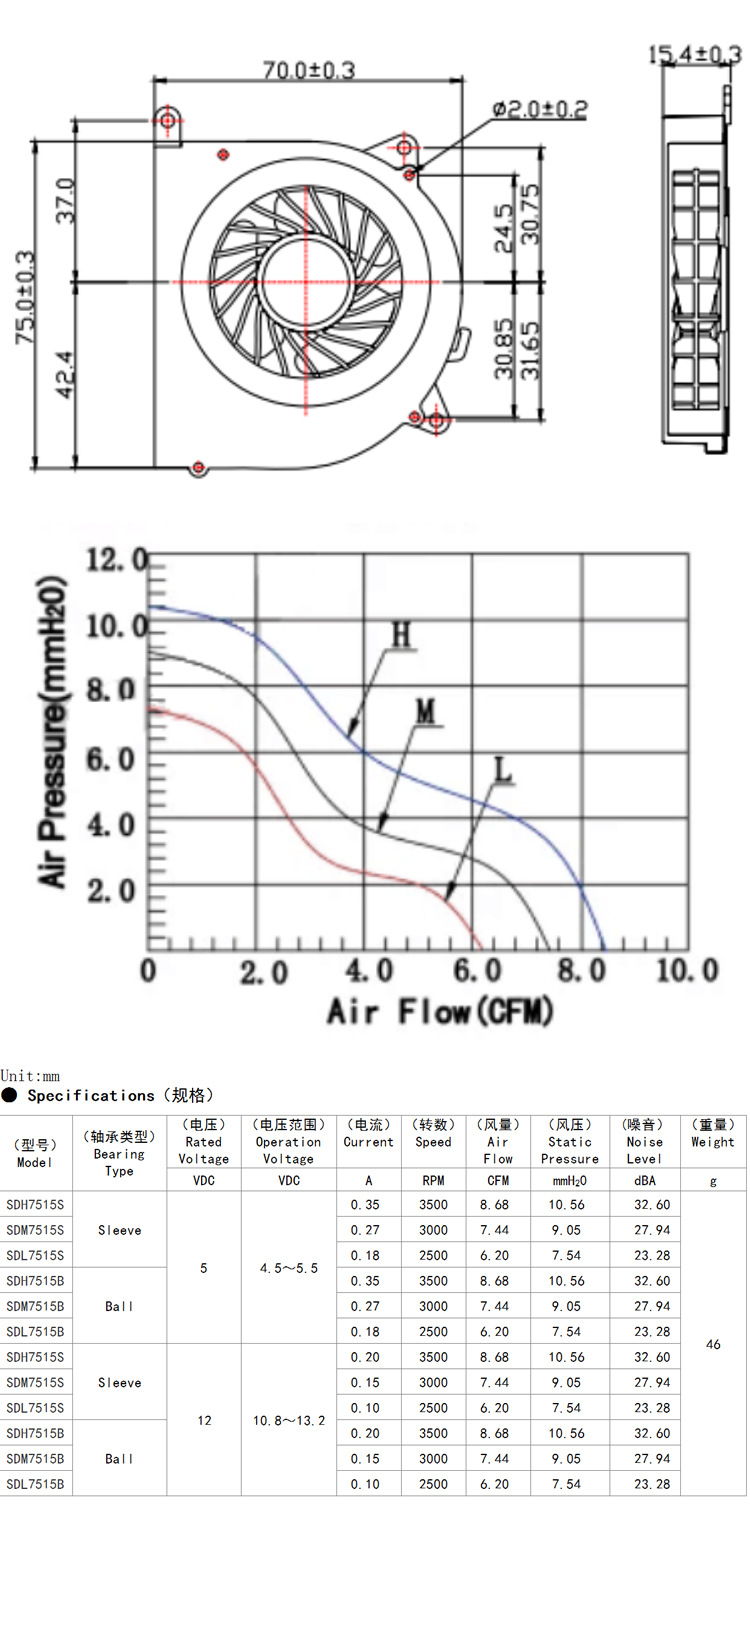 Parameters of cooling fan of oxygen generator